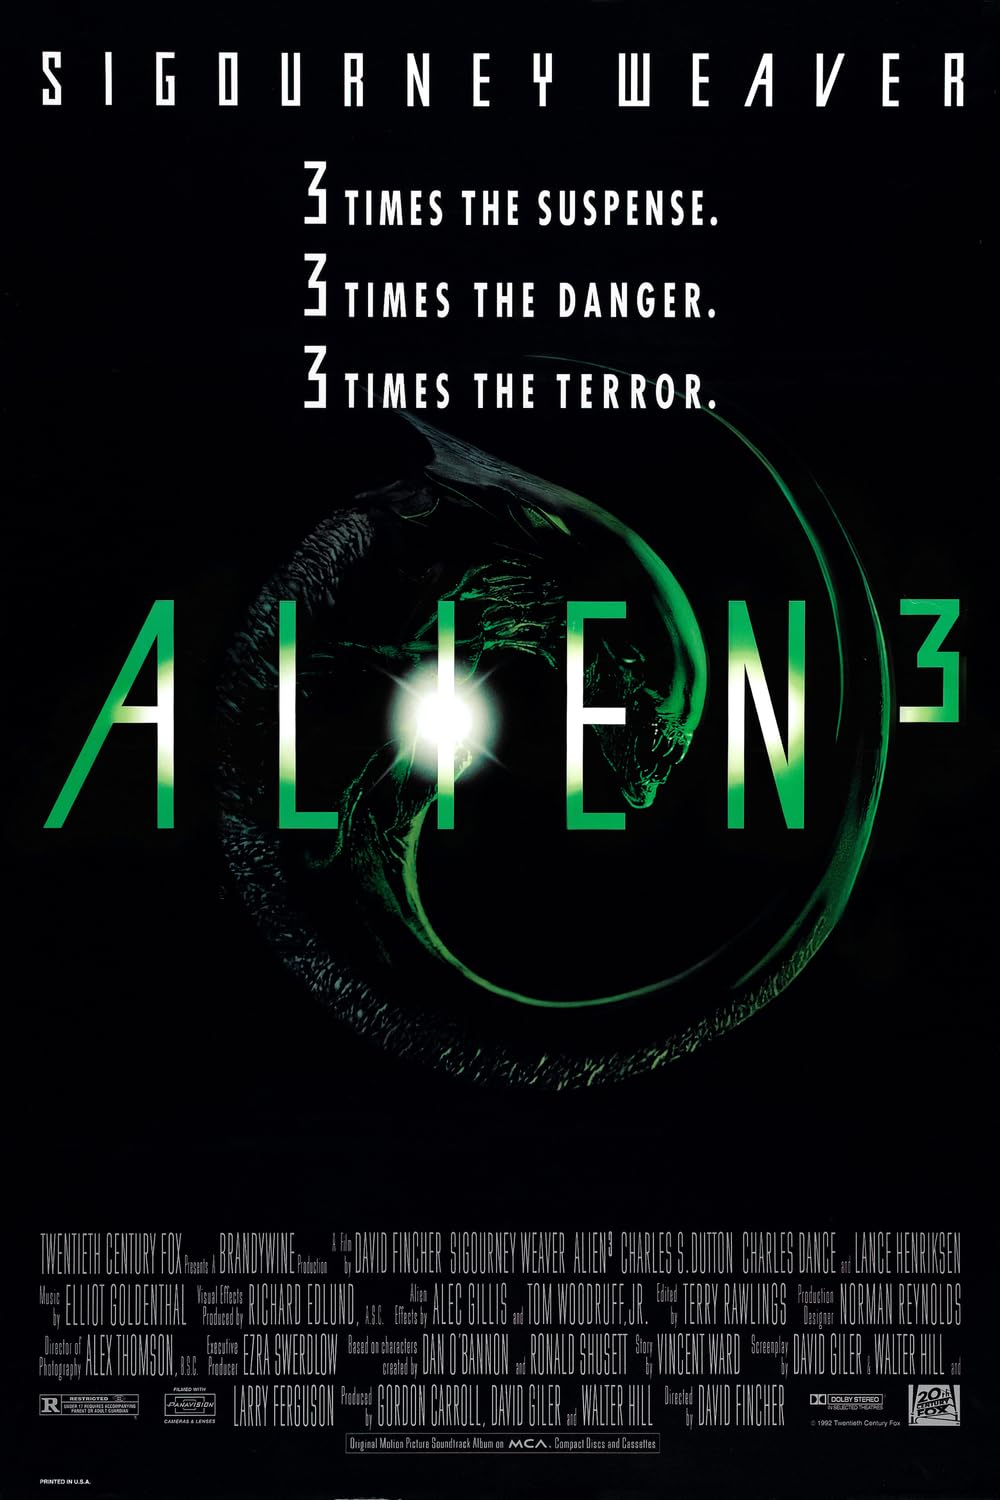 FULL MOVIE: Alien 3 (1992)